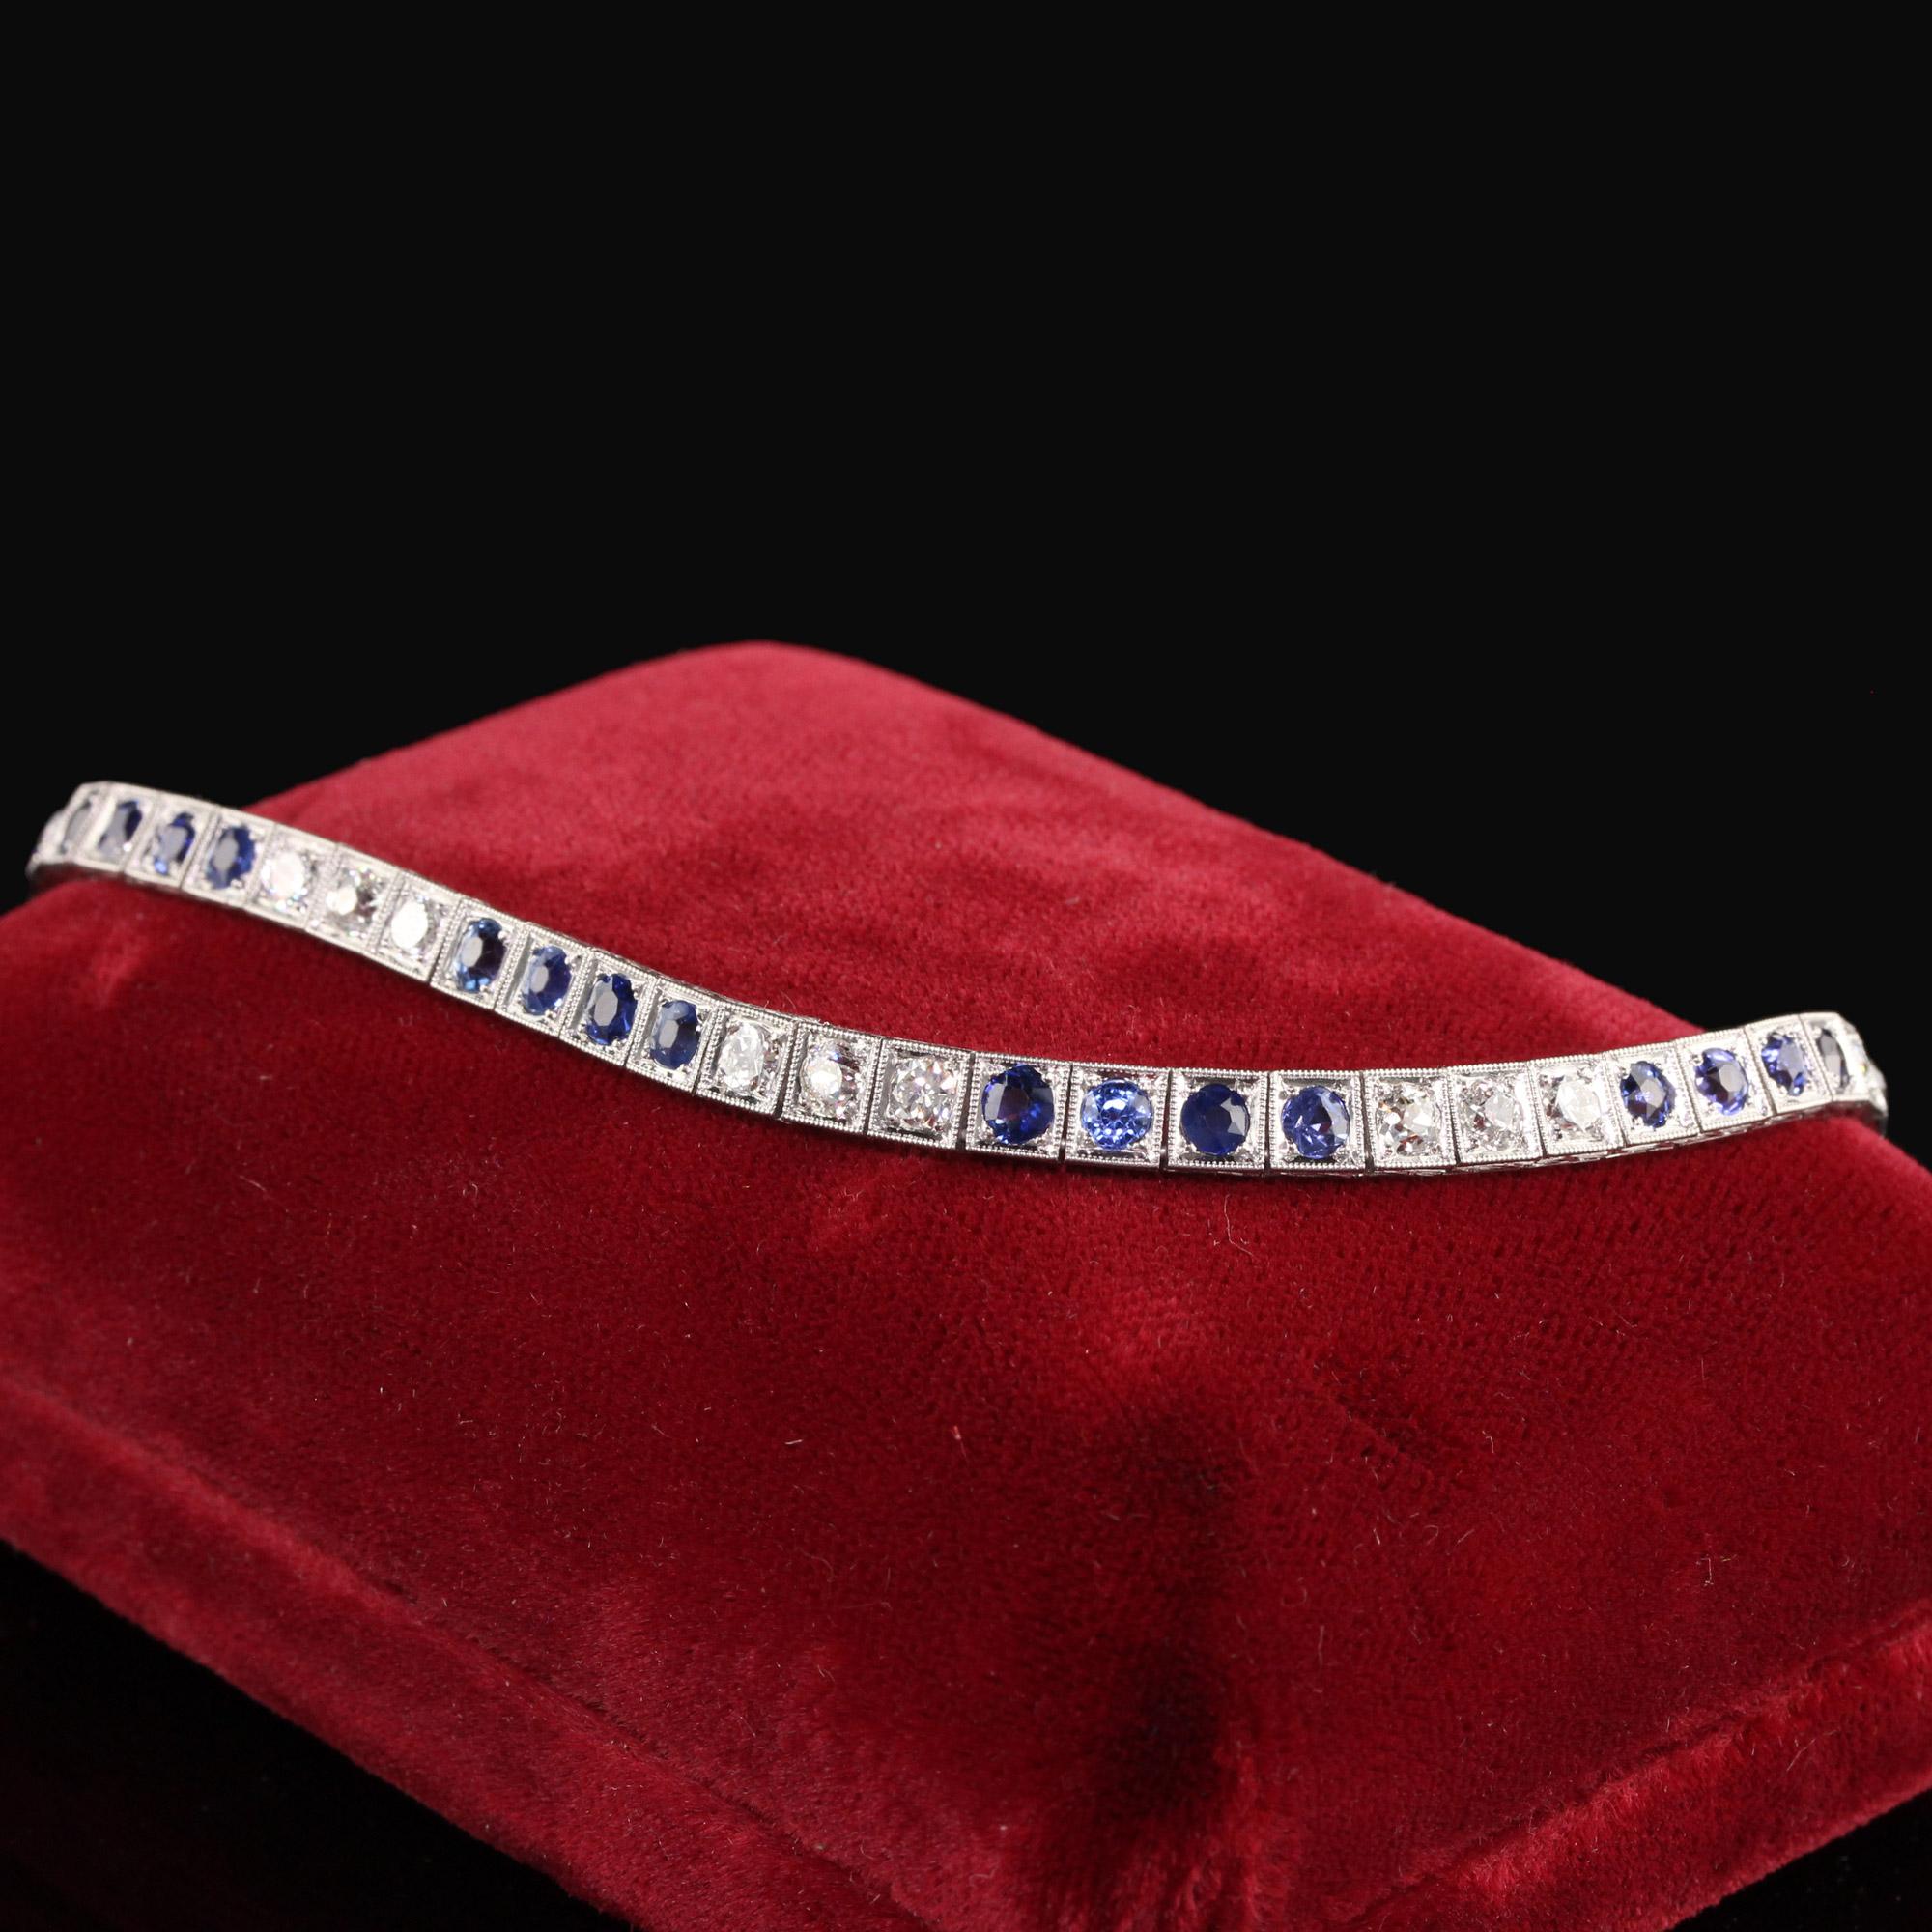 Schönes antikes Art Deco Platin altes europäisches Diamant und Saphir Tennisarmband. Dieses schöne Tennisarmband ist aus Platin gefertigt. Auf dem Armband wechseln sich Diamanten mit altem europäischem Schliff und Saphire mit altem Schliff ab. Die